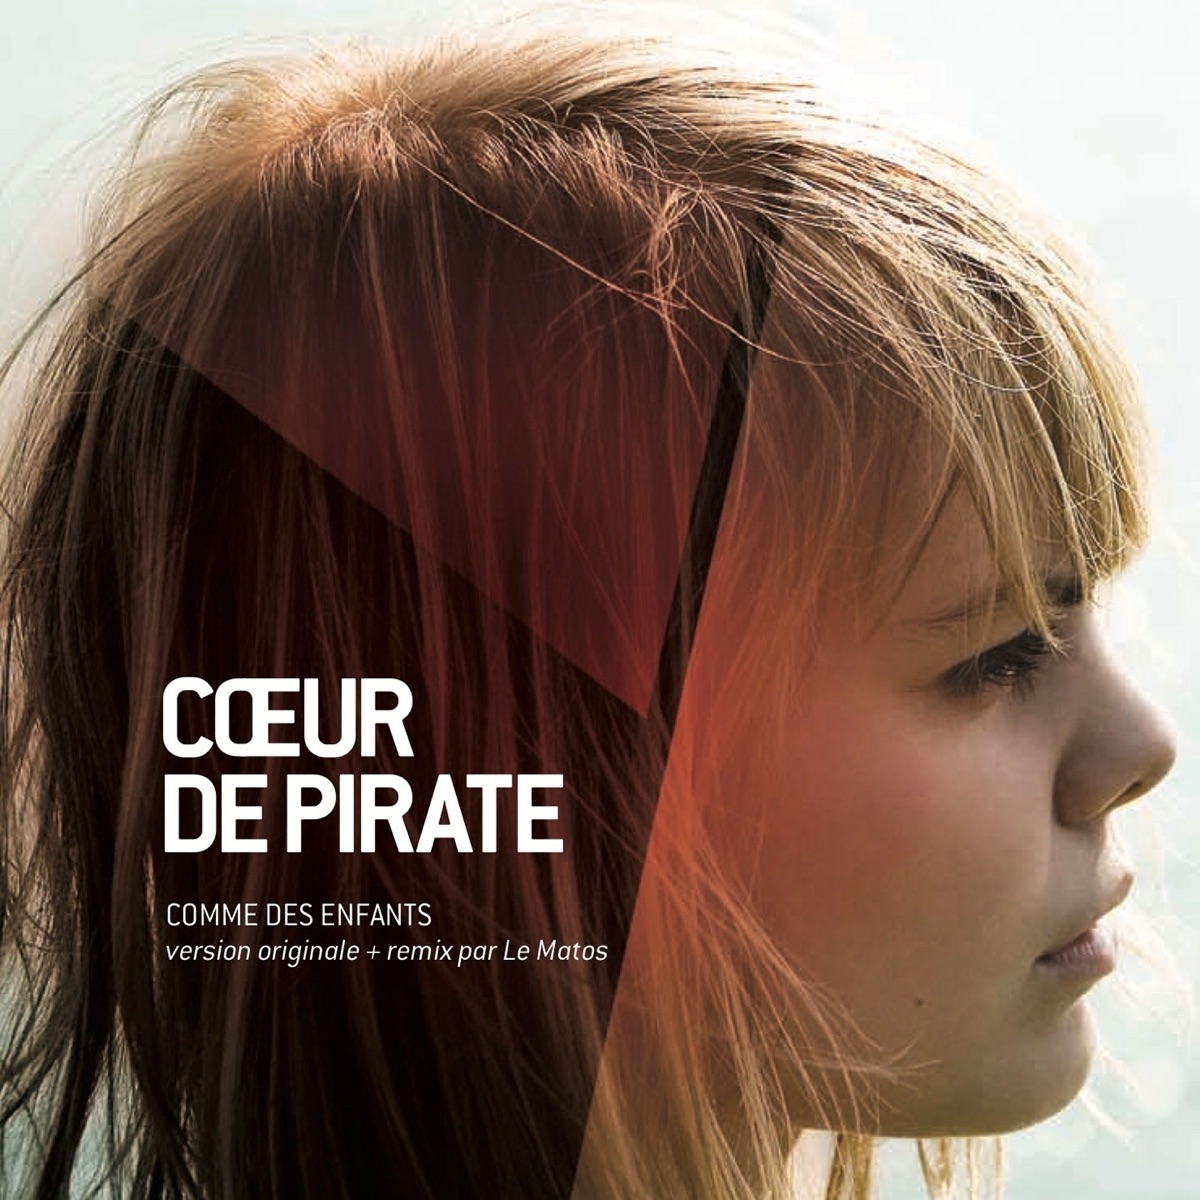 Cœur de pirate — Comme des enfants cover artwork